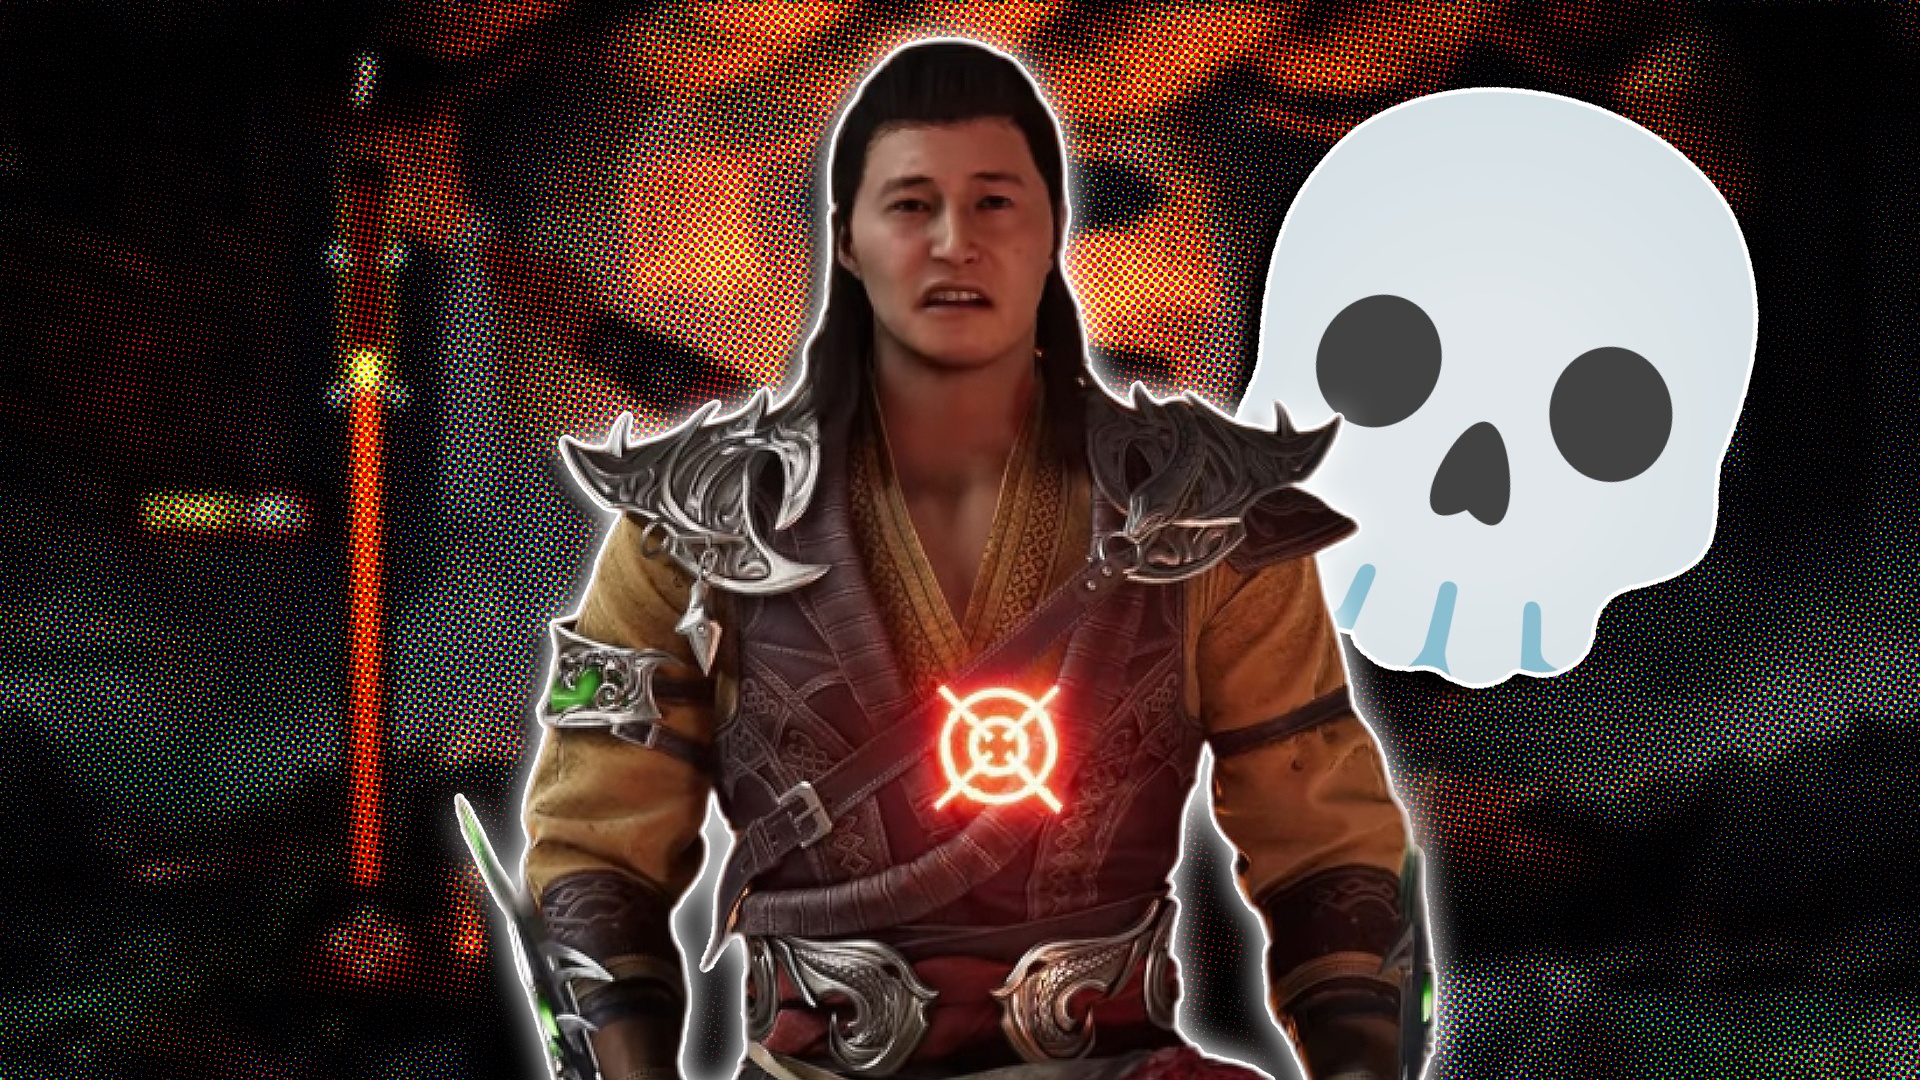 Mortal Kombat 1 Season Pass DLC Explained